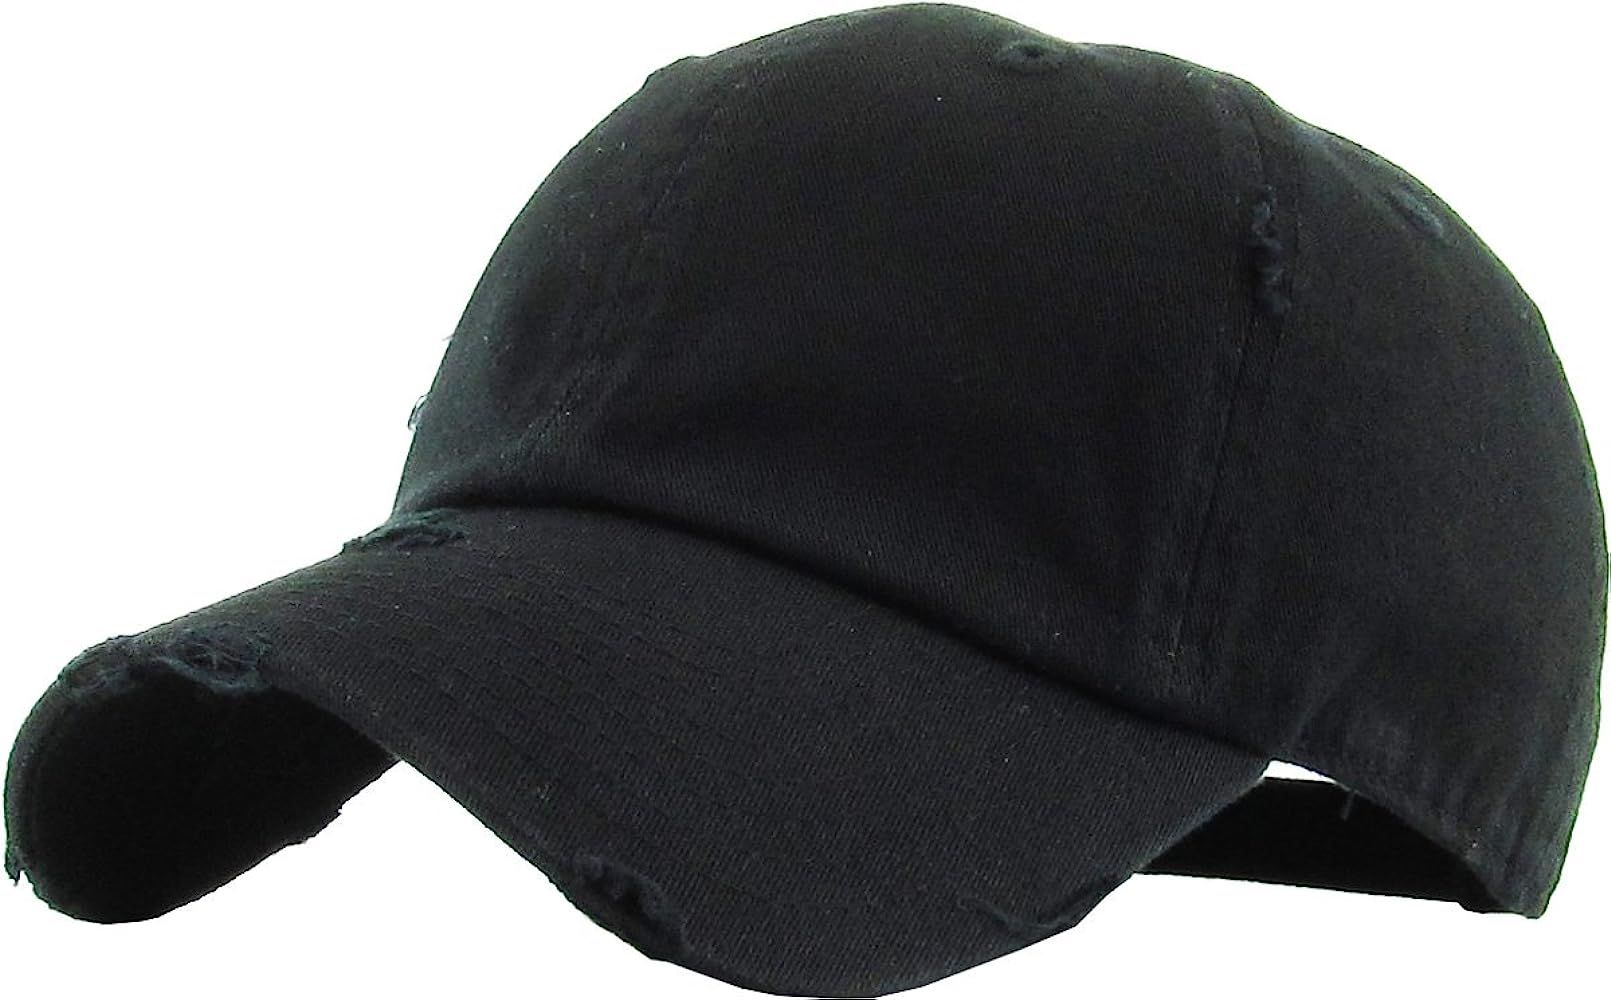 KBETHOS Vintage Washed Distressed Cotton Dad Hat Baseball Cap Adjustable Polo Trucker Unisex Style H | Amazon (US)